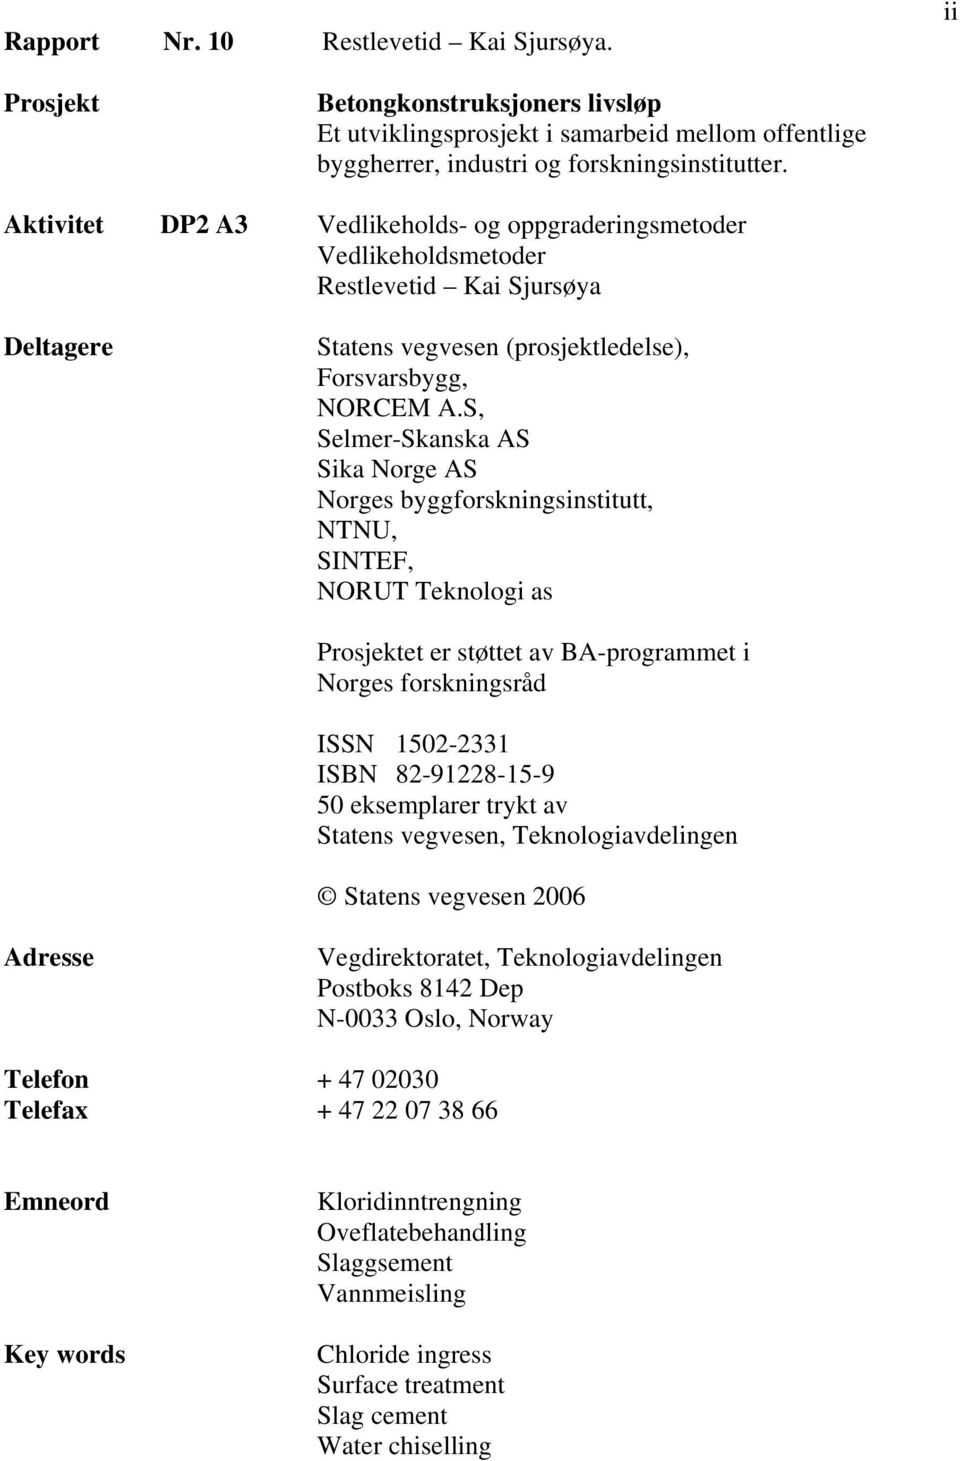 S, Selmer-Skanska AS Sika Norge AS Norges byggforskningsinstitutt, NTNU, SINTEF, NORUT Teknologi as Prosjektet er støttet av BA-programmet i Norges forskningsråd ISSN 1502-2331 ISBN 82-91228-15-9 50